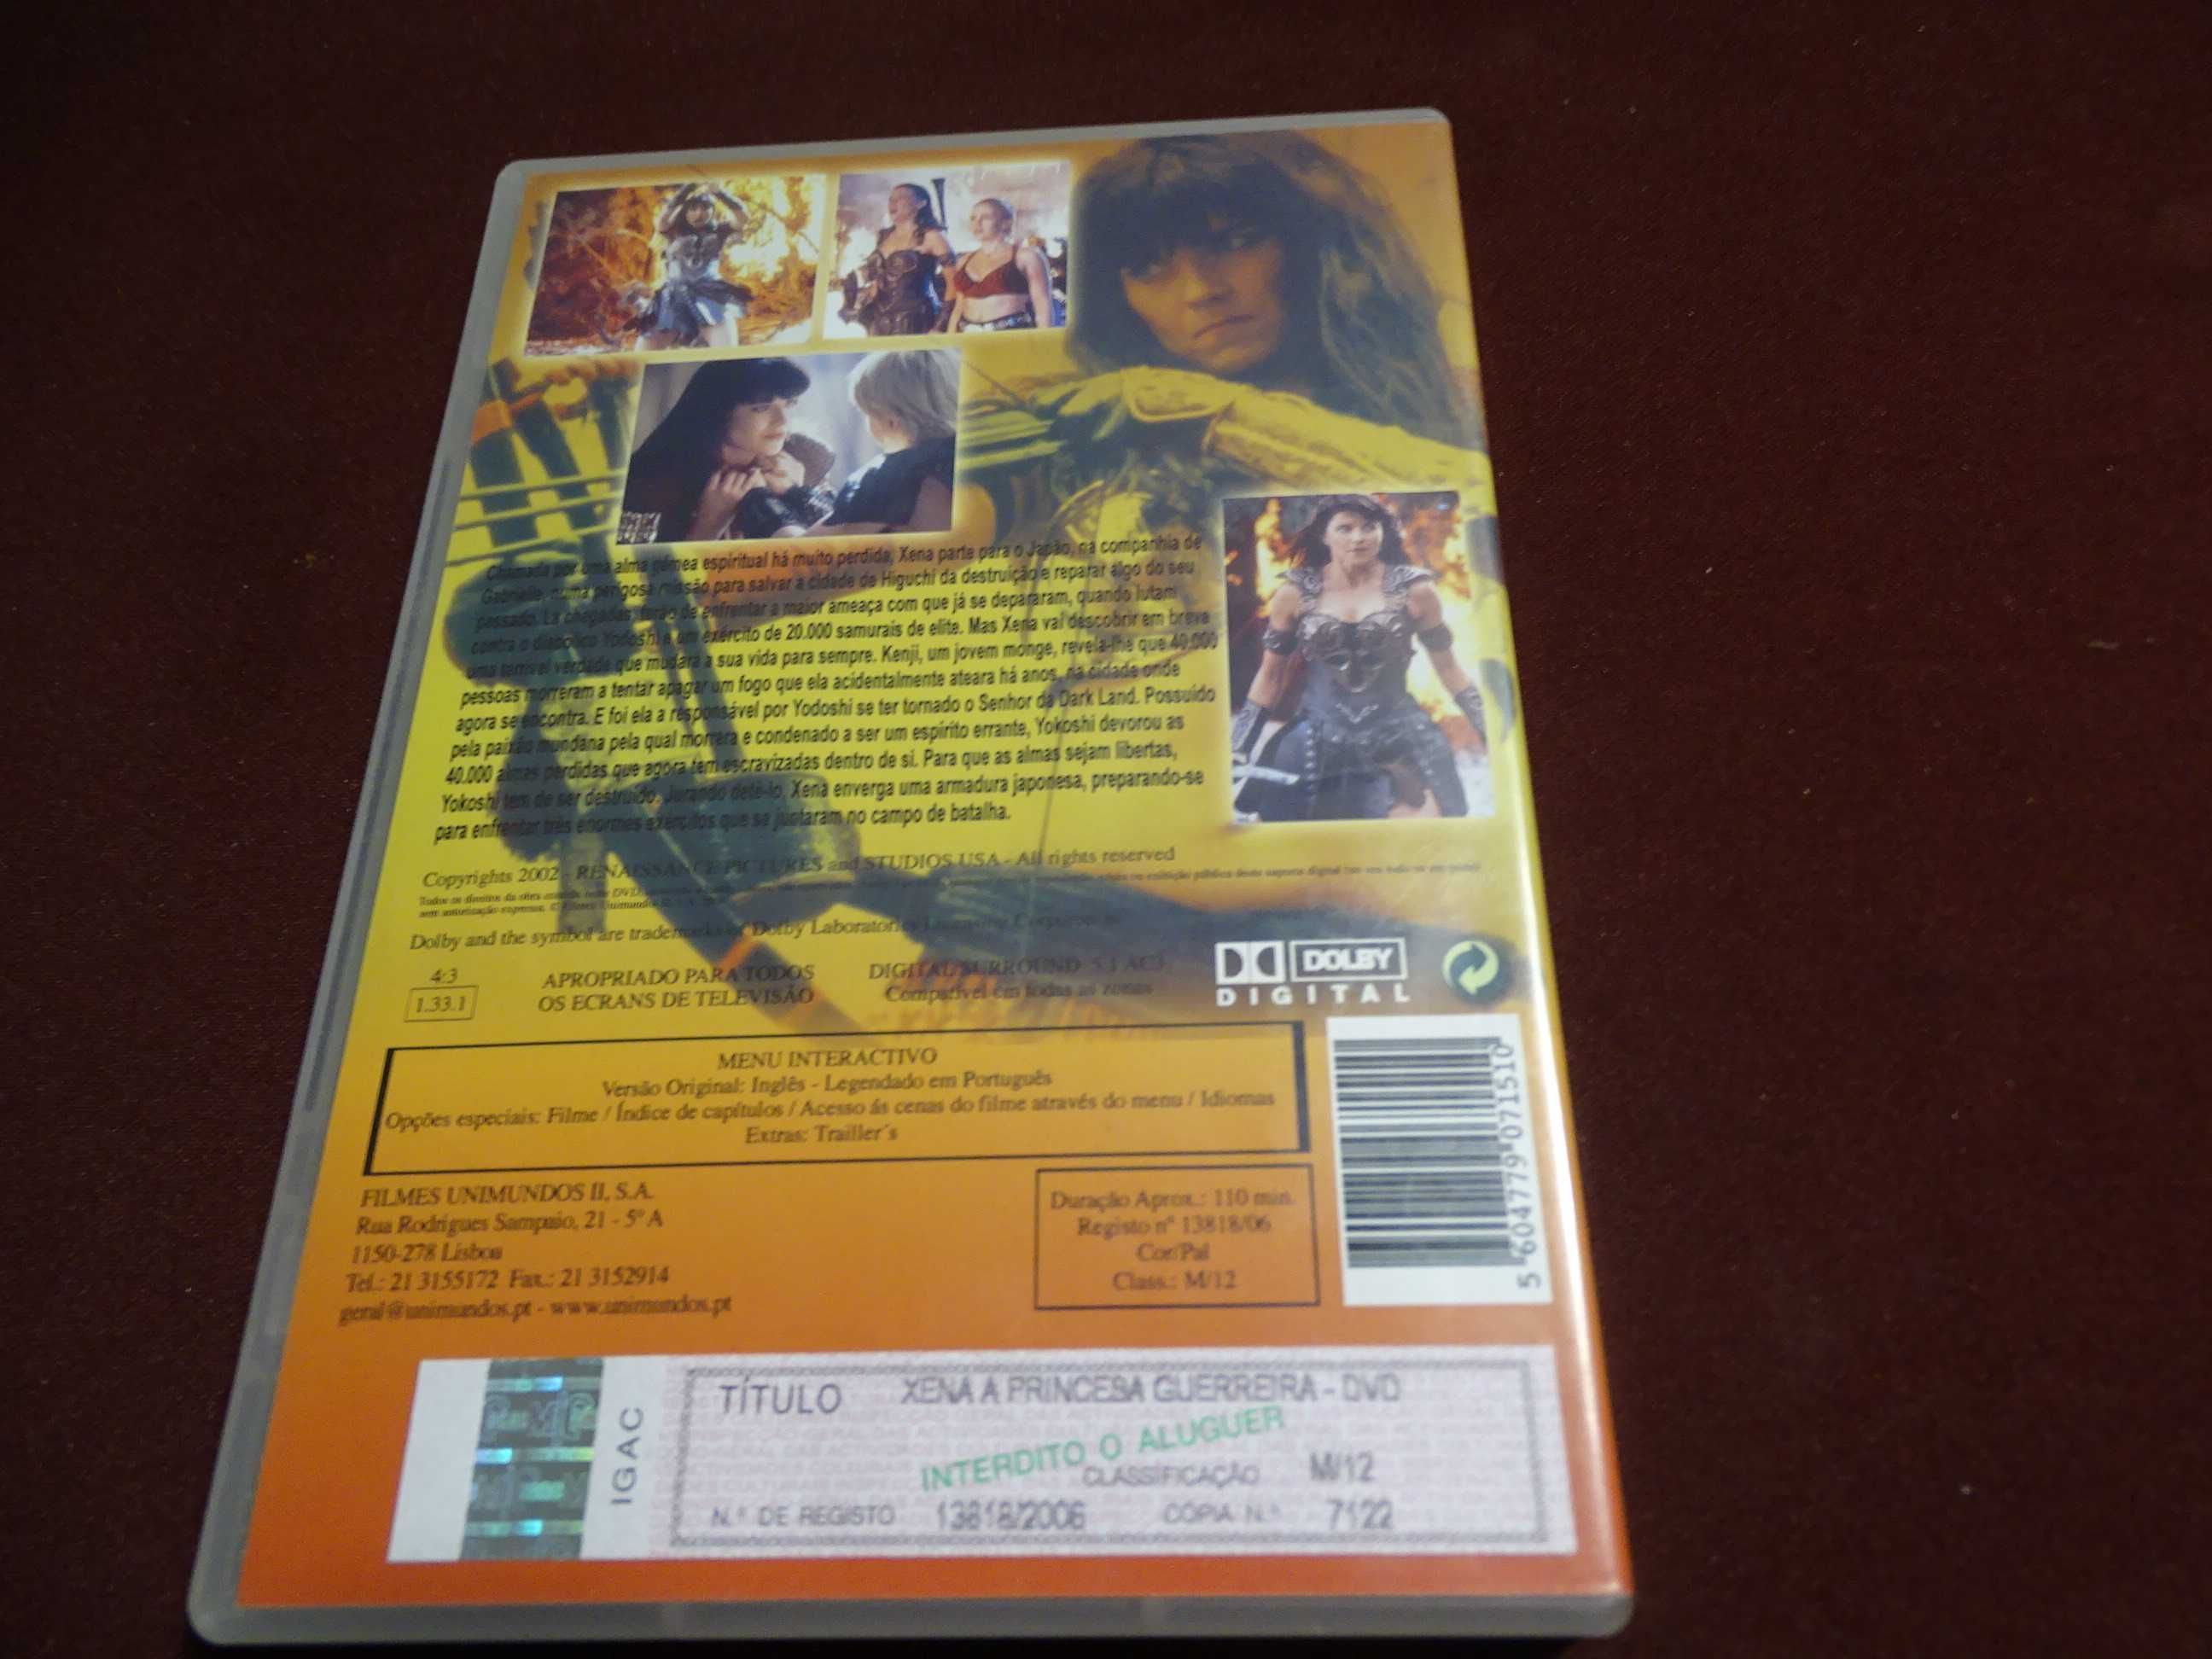 DVD-Xena/A Princesa guerreira